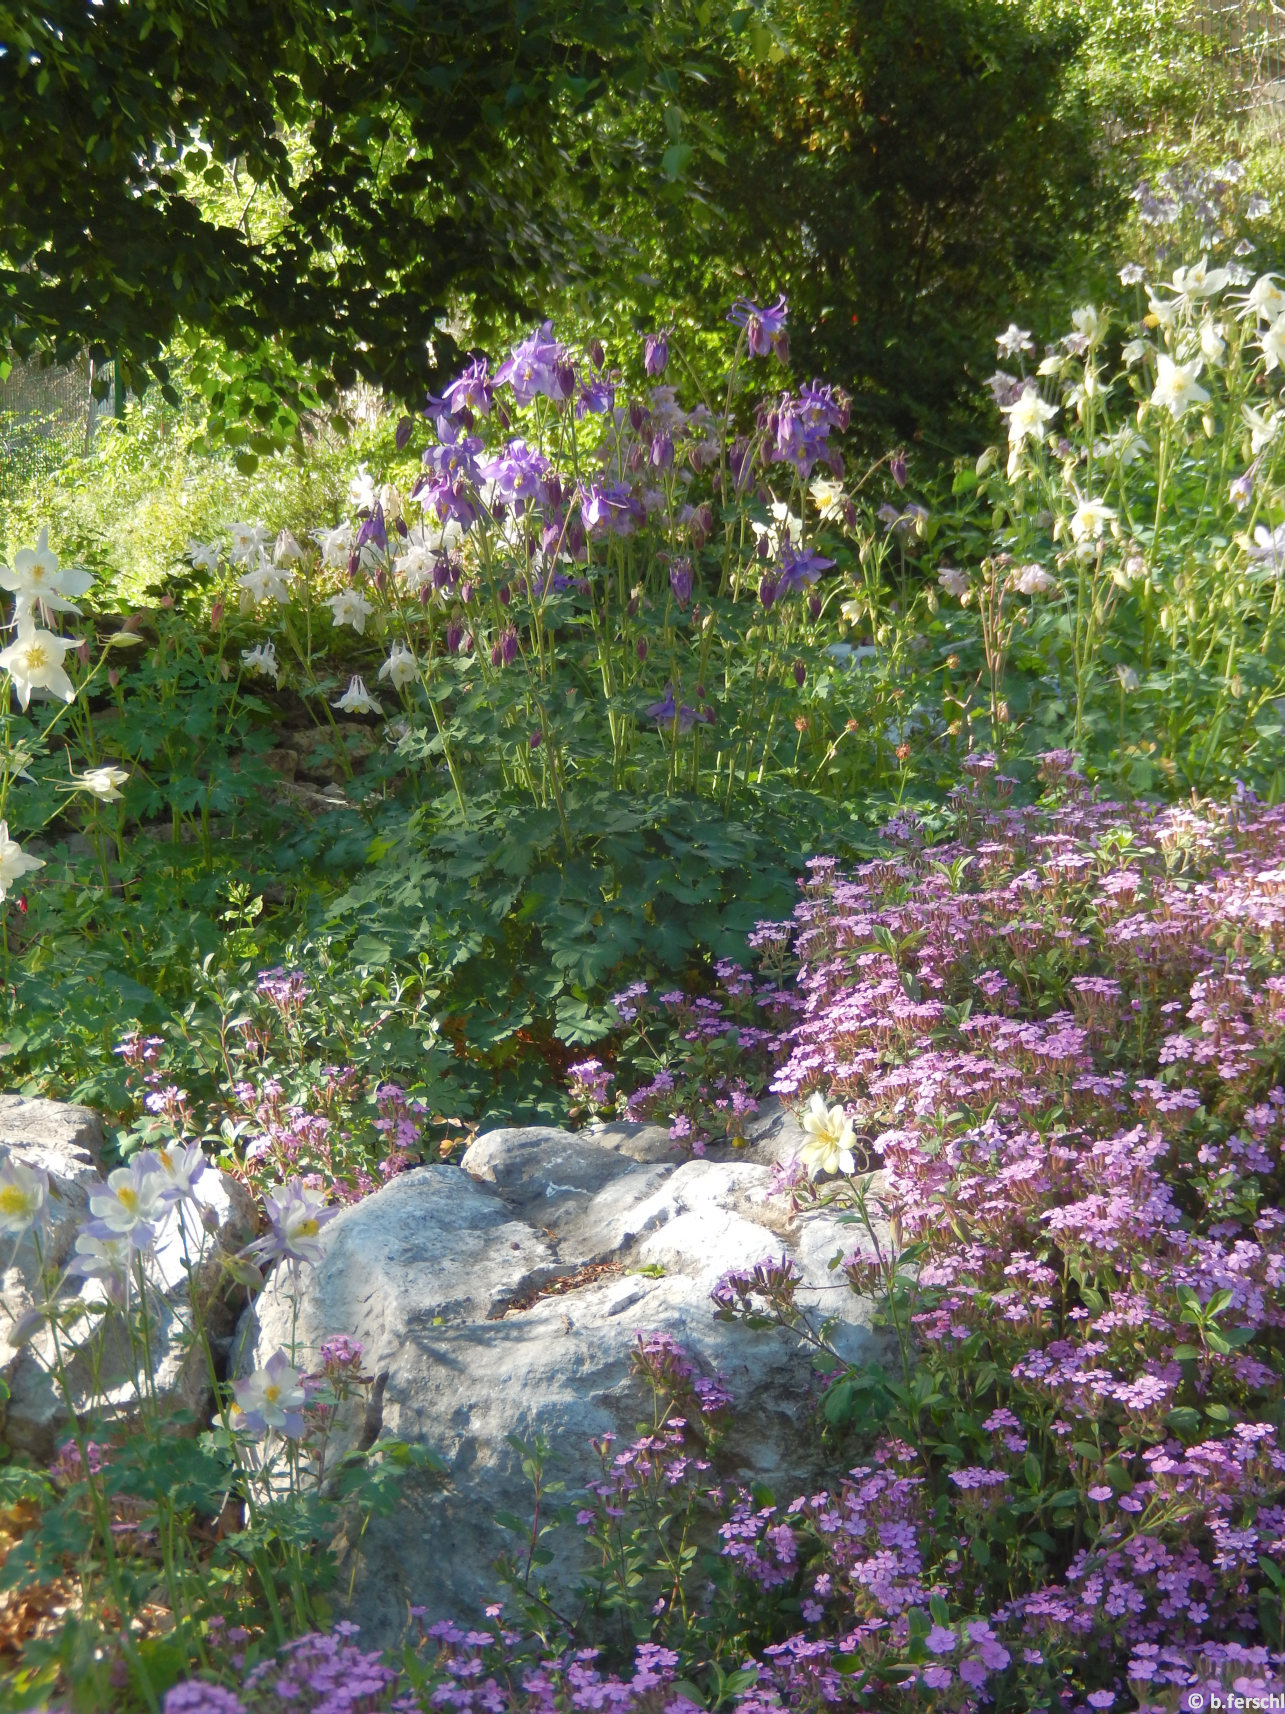 A sziklakert legnépesebb, virágzó évelője májusban a harangláb (Aquilegia vulgaris)